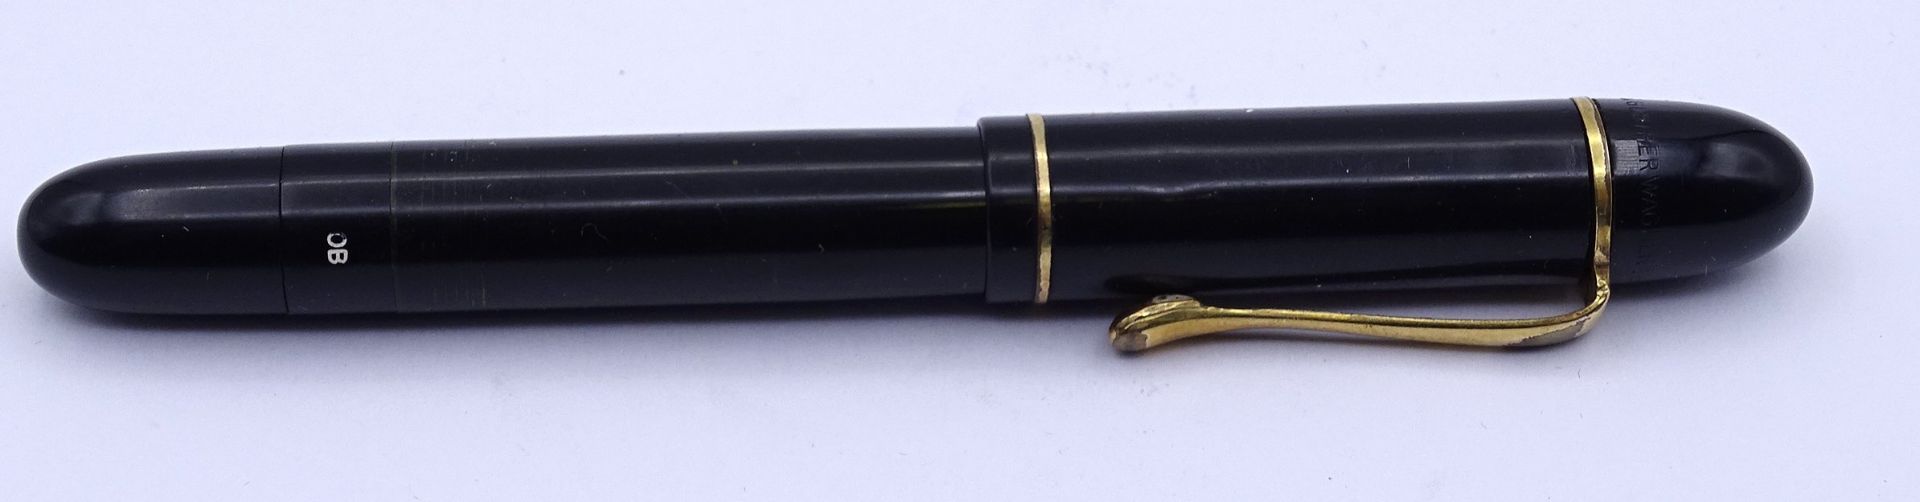 Pelikan Füller, GG Feder 0.585 OB, Gesamtlänge L. 12,2cm, Alters- und Gebrauchsspuren - Bild 4 aus 5